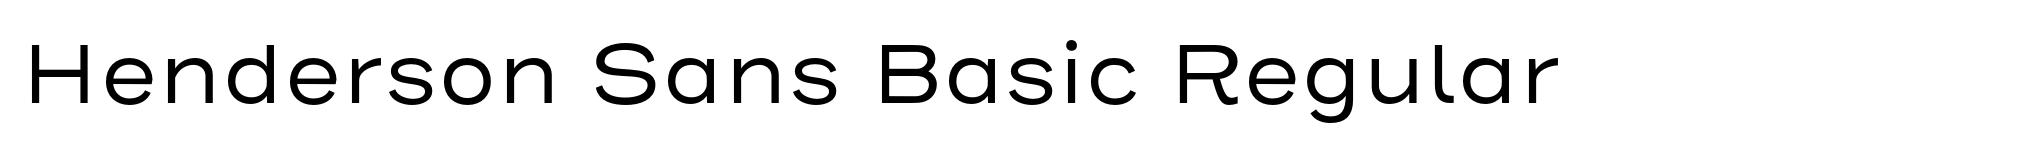 Henderson Sans Basic Regular image